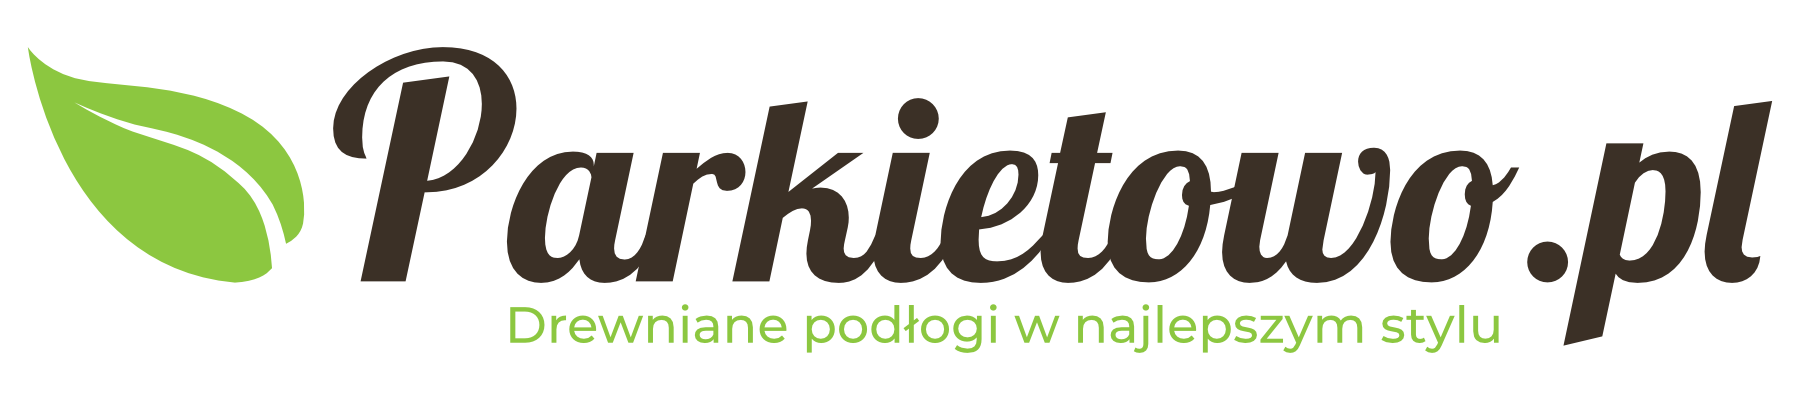 Parkietowo.pl – Drewniane podłogi w najlepszym stylu